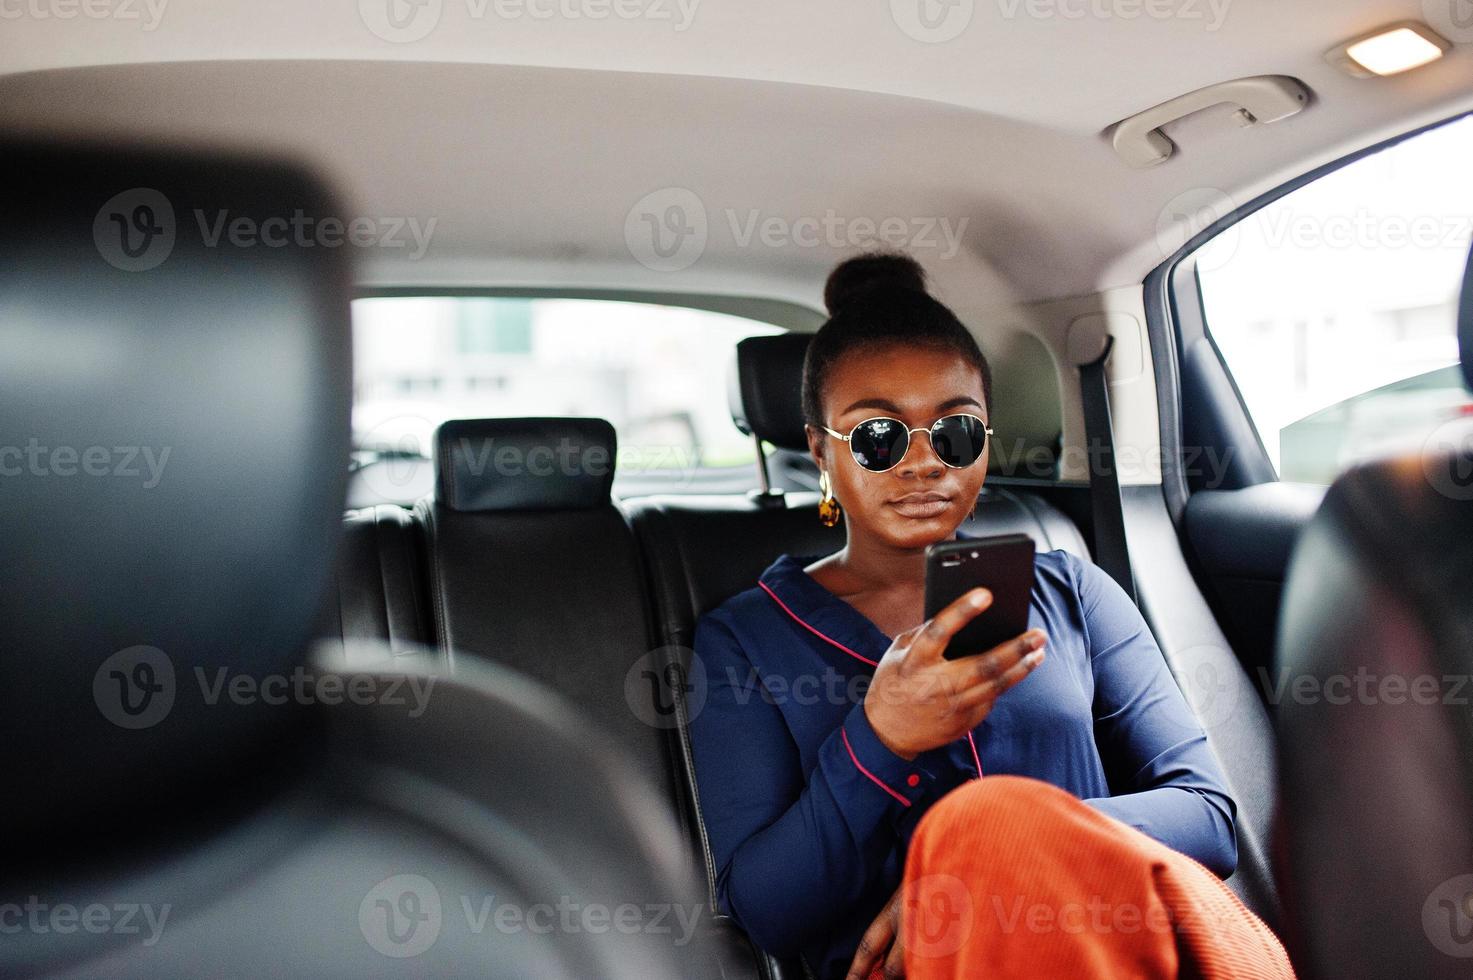 una rica mujer africana de negocios con gafas de sol se sienta en un coche suv con asientos de cuero negro. teléfono móvil a mano. foto